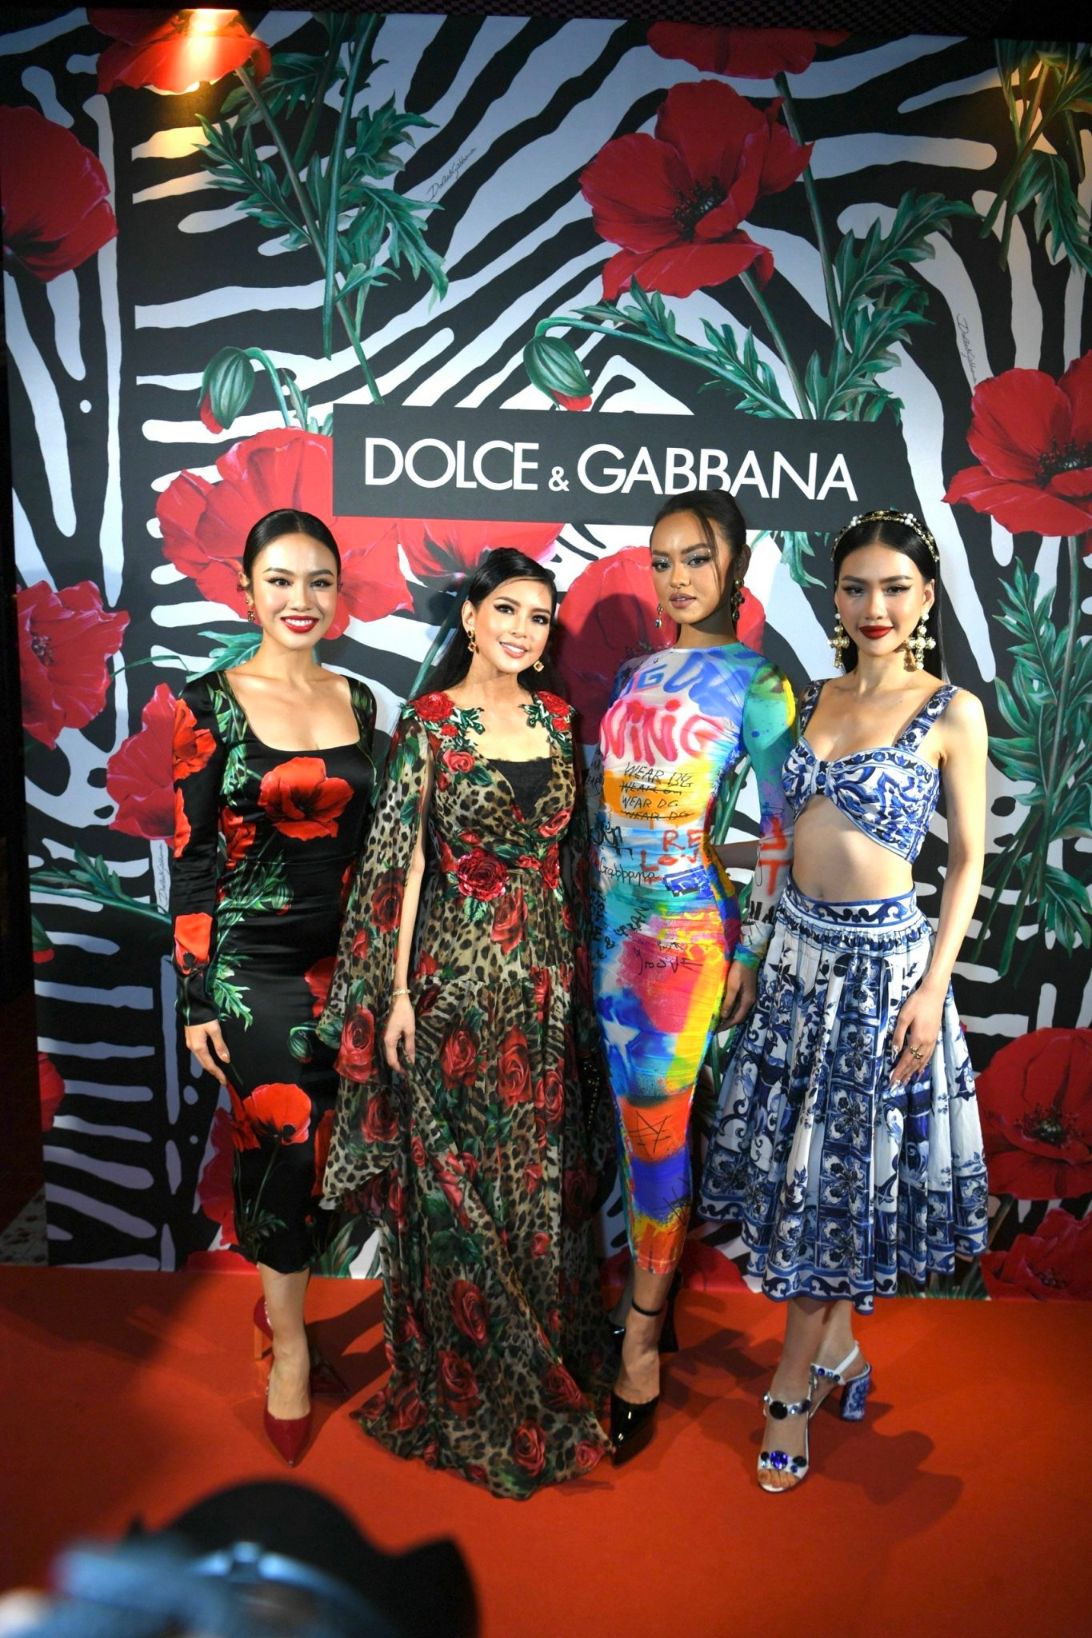 Tiên Nguyễn tổ chức đêm tiệc Dolce Gabbana sang chảnh đẳng cấp 9 Tiên Nguyễn tổ chức đêm tiệc Dolce & Gabbana sang chảnh đẳng cấp